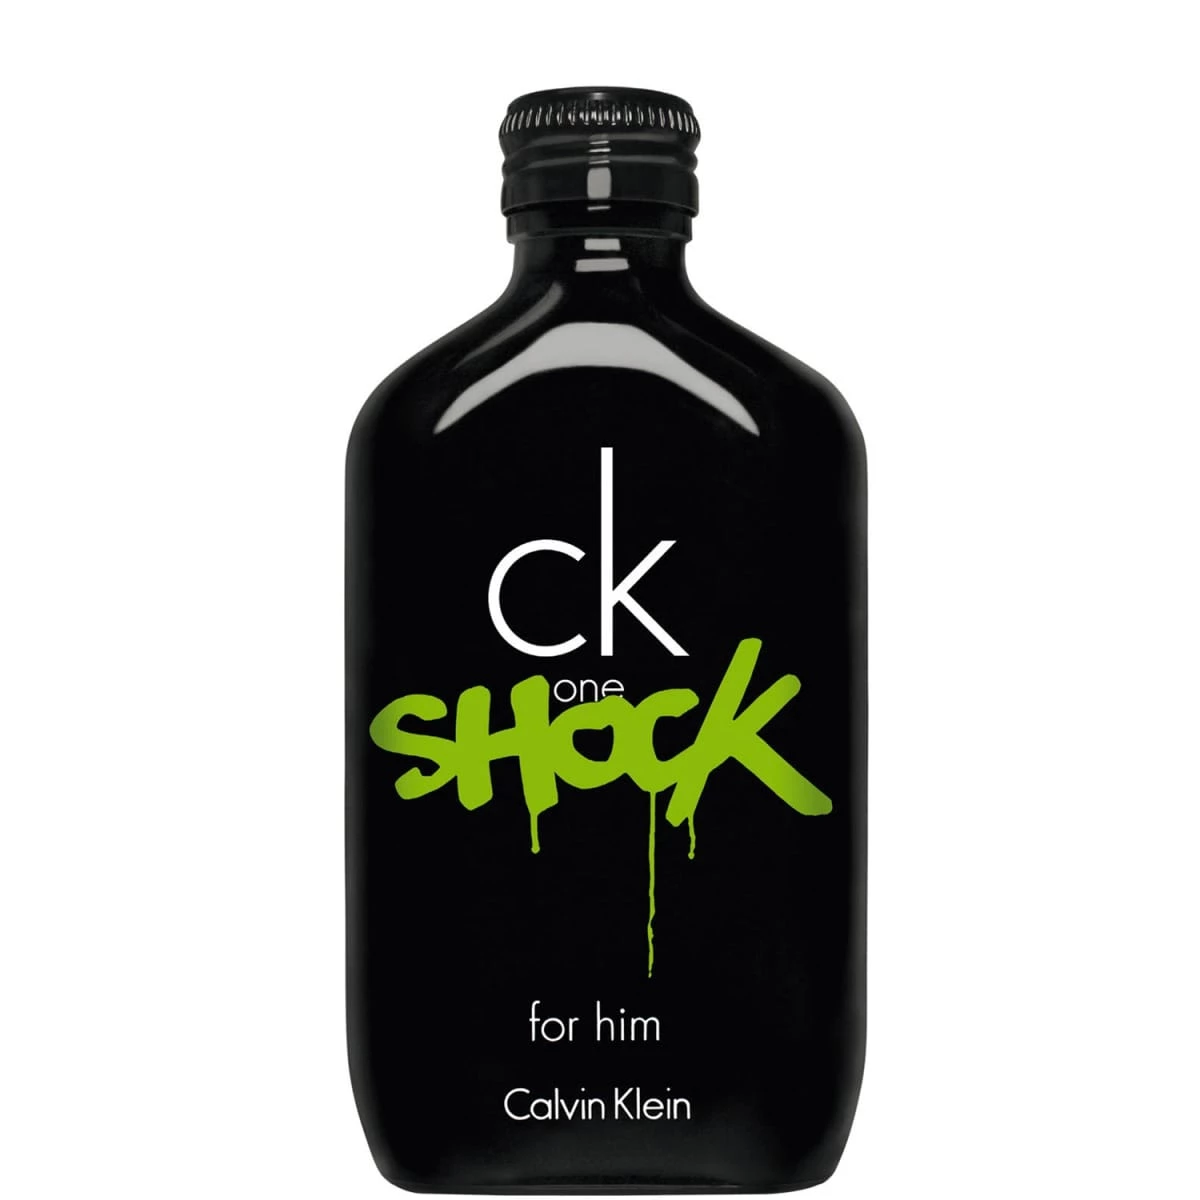 Ck One Shock For Him de Calvin Klein - Eau de Toilette - Incenza